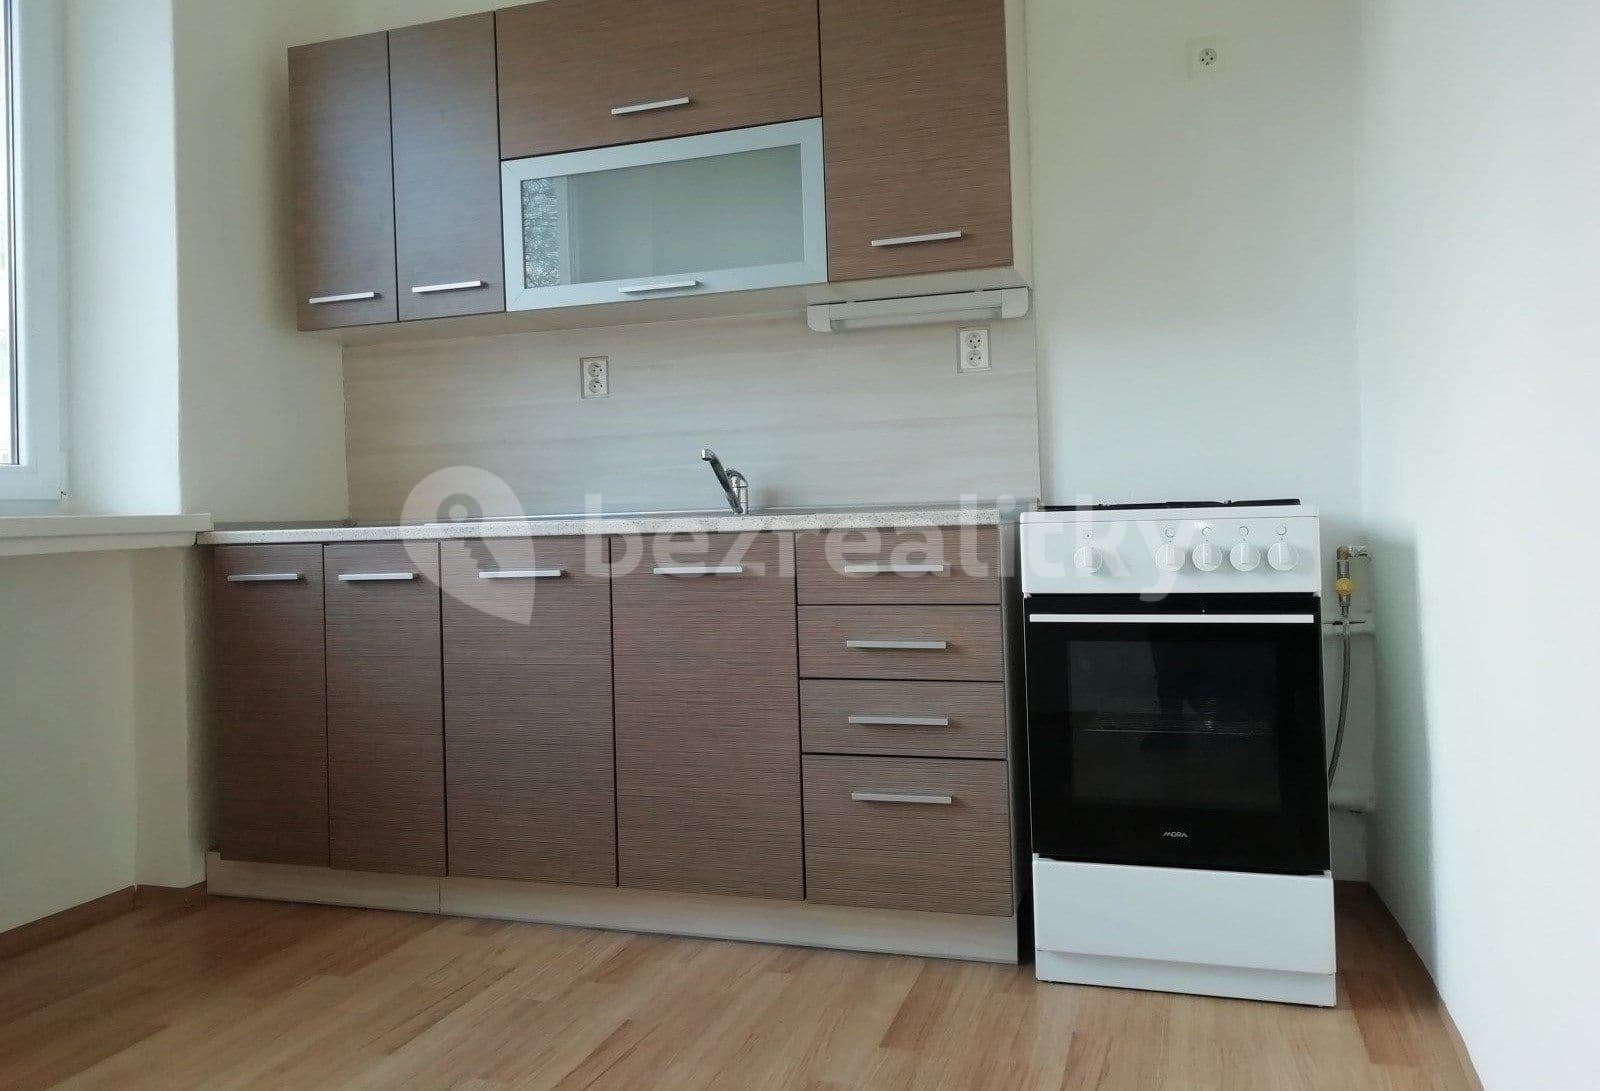 2 bedroom flat to rent, 62 m², Nálepkovo náměstí, Ostrava, Moravskoslezský Region